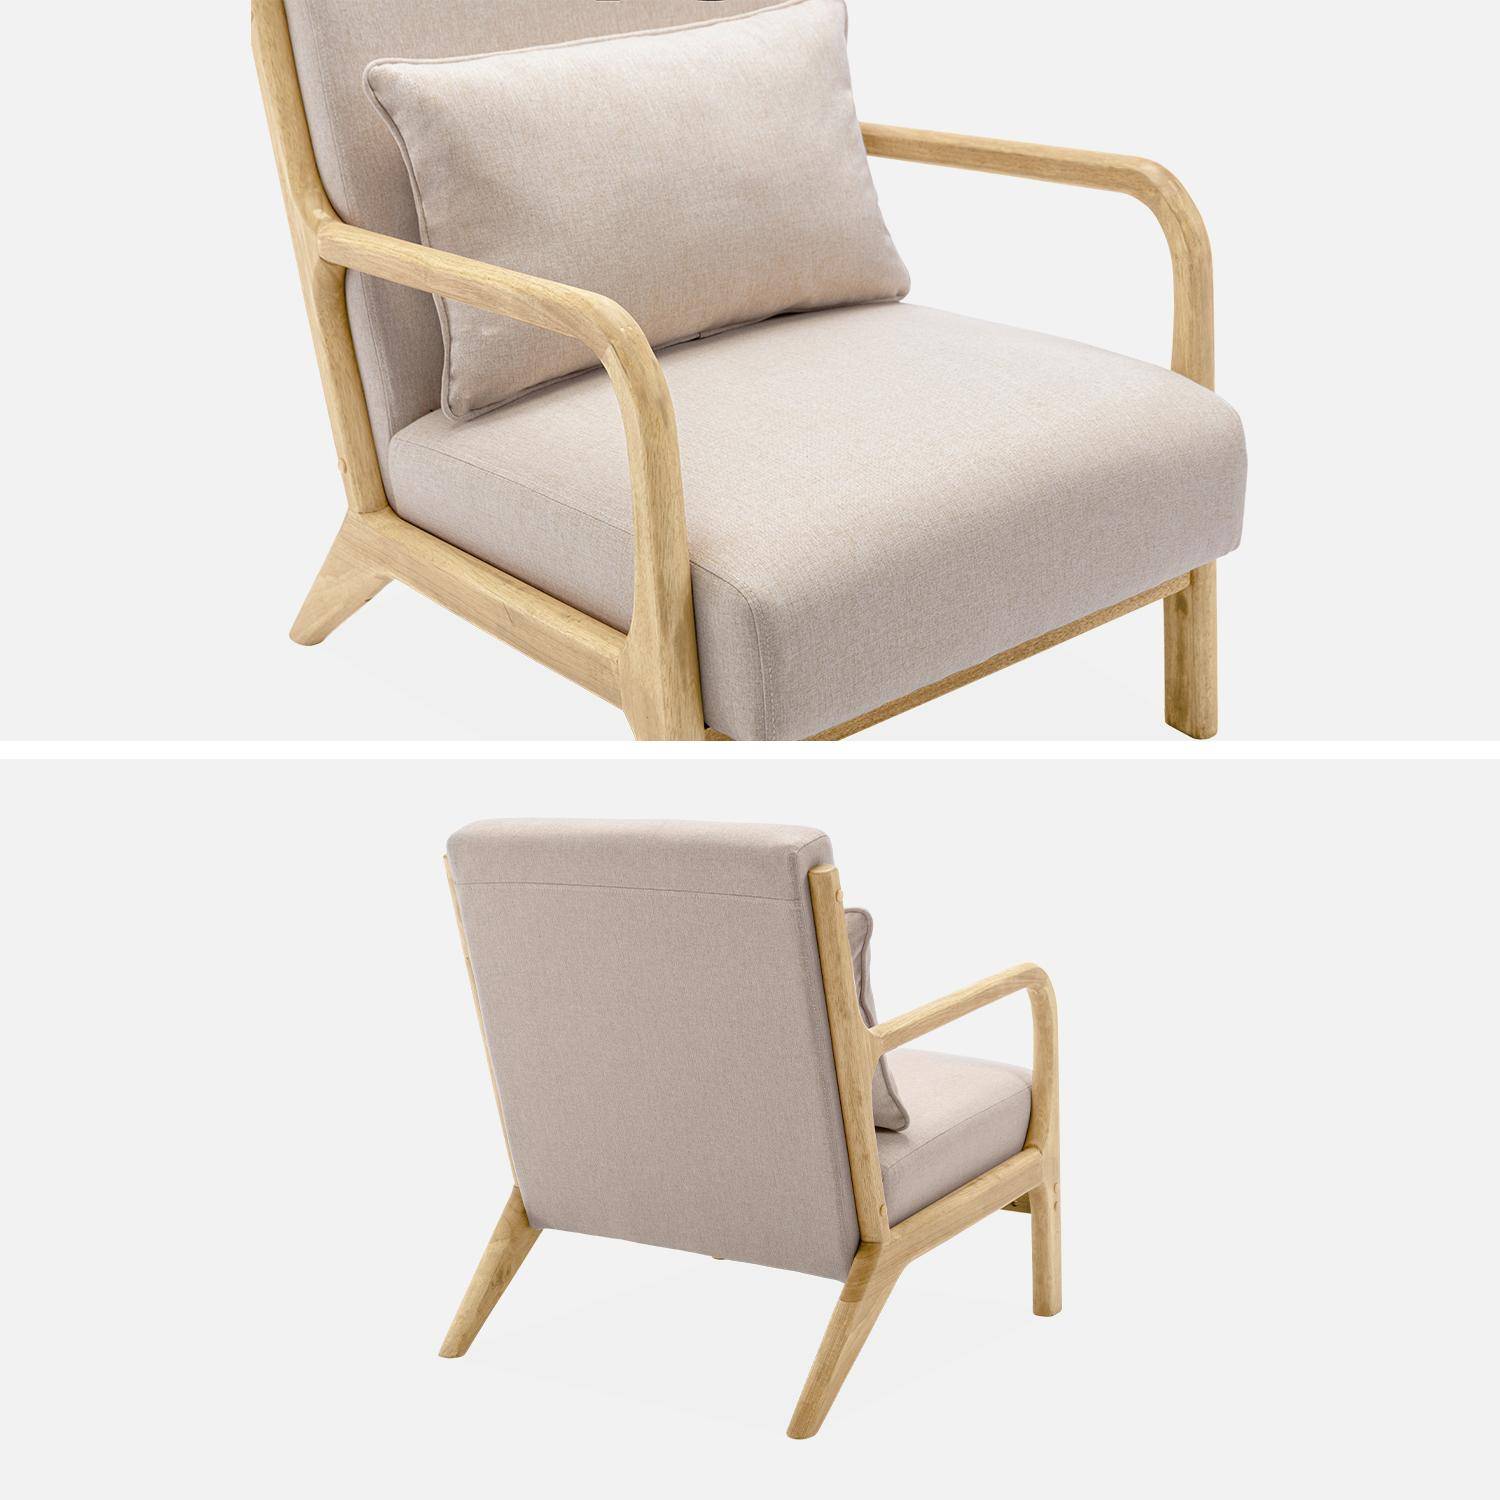 Poltrona de design em madeira e tecido, 1 assento reto fixo, pernas em bússola escandinavas, estrutura em madeira maciça, assento bege confortável,sweeek,Photo6